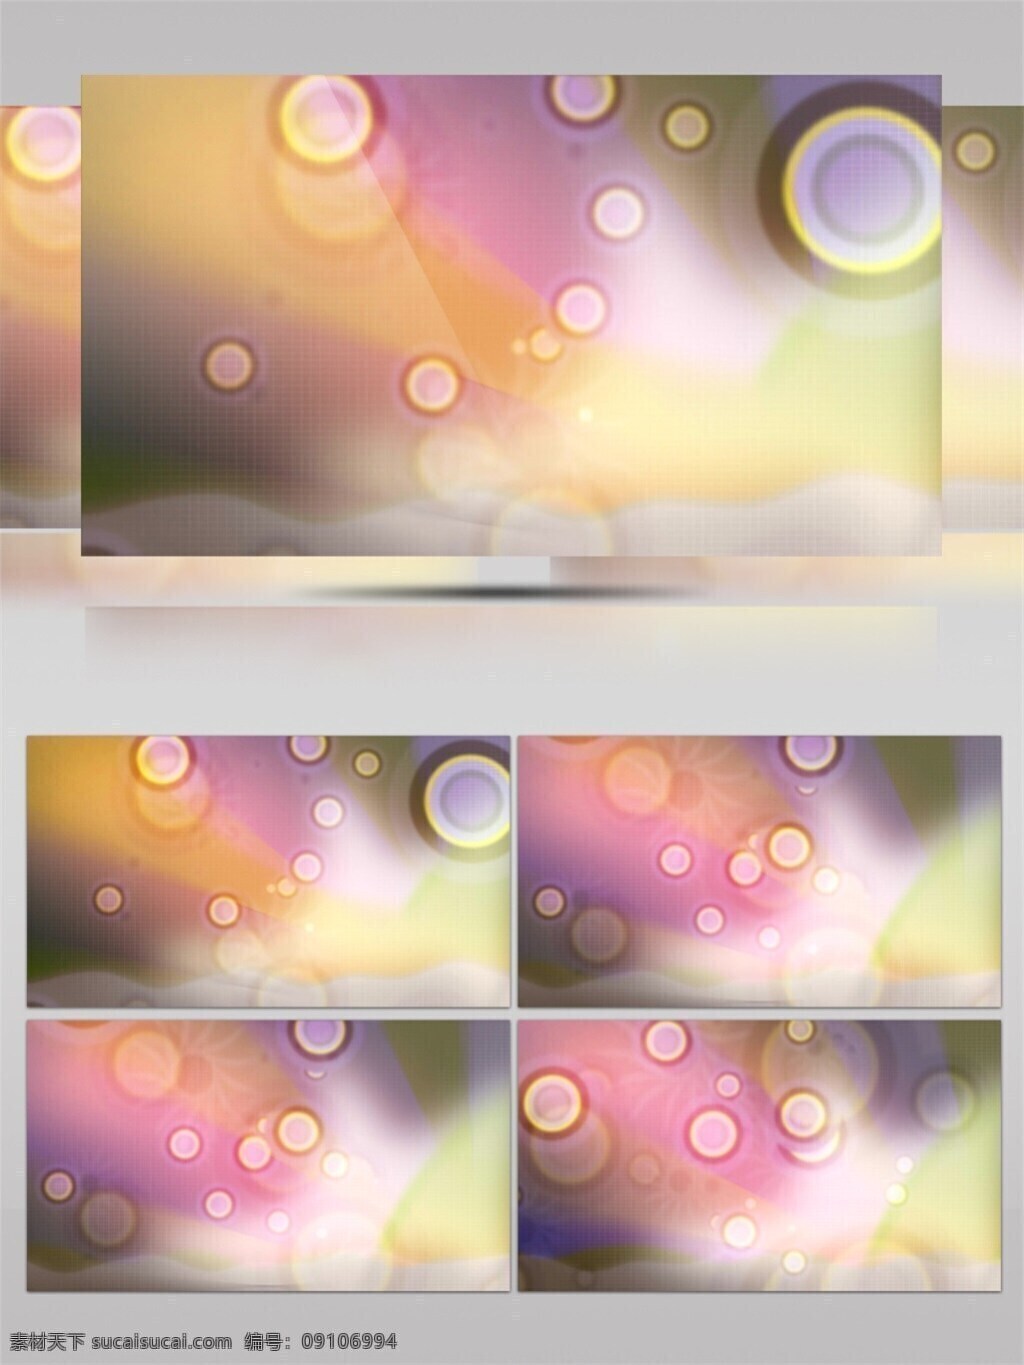 晨曦 暖 光 高清 视频 3d视频素材 浮光掠影 光斑碎点 暖色滤镜 漂浮光